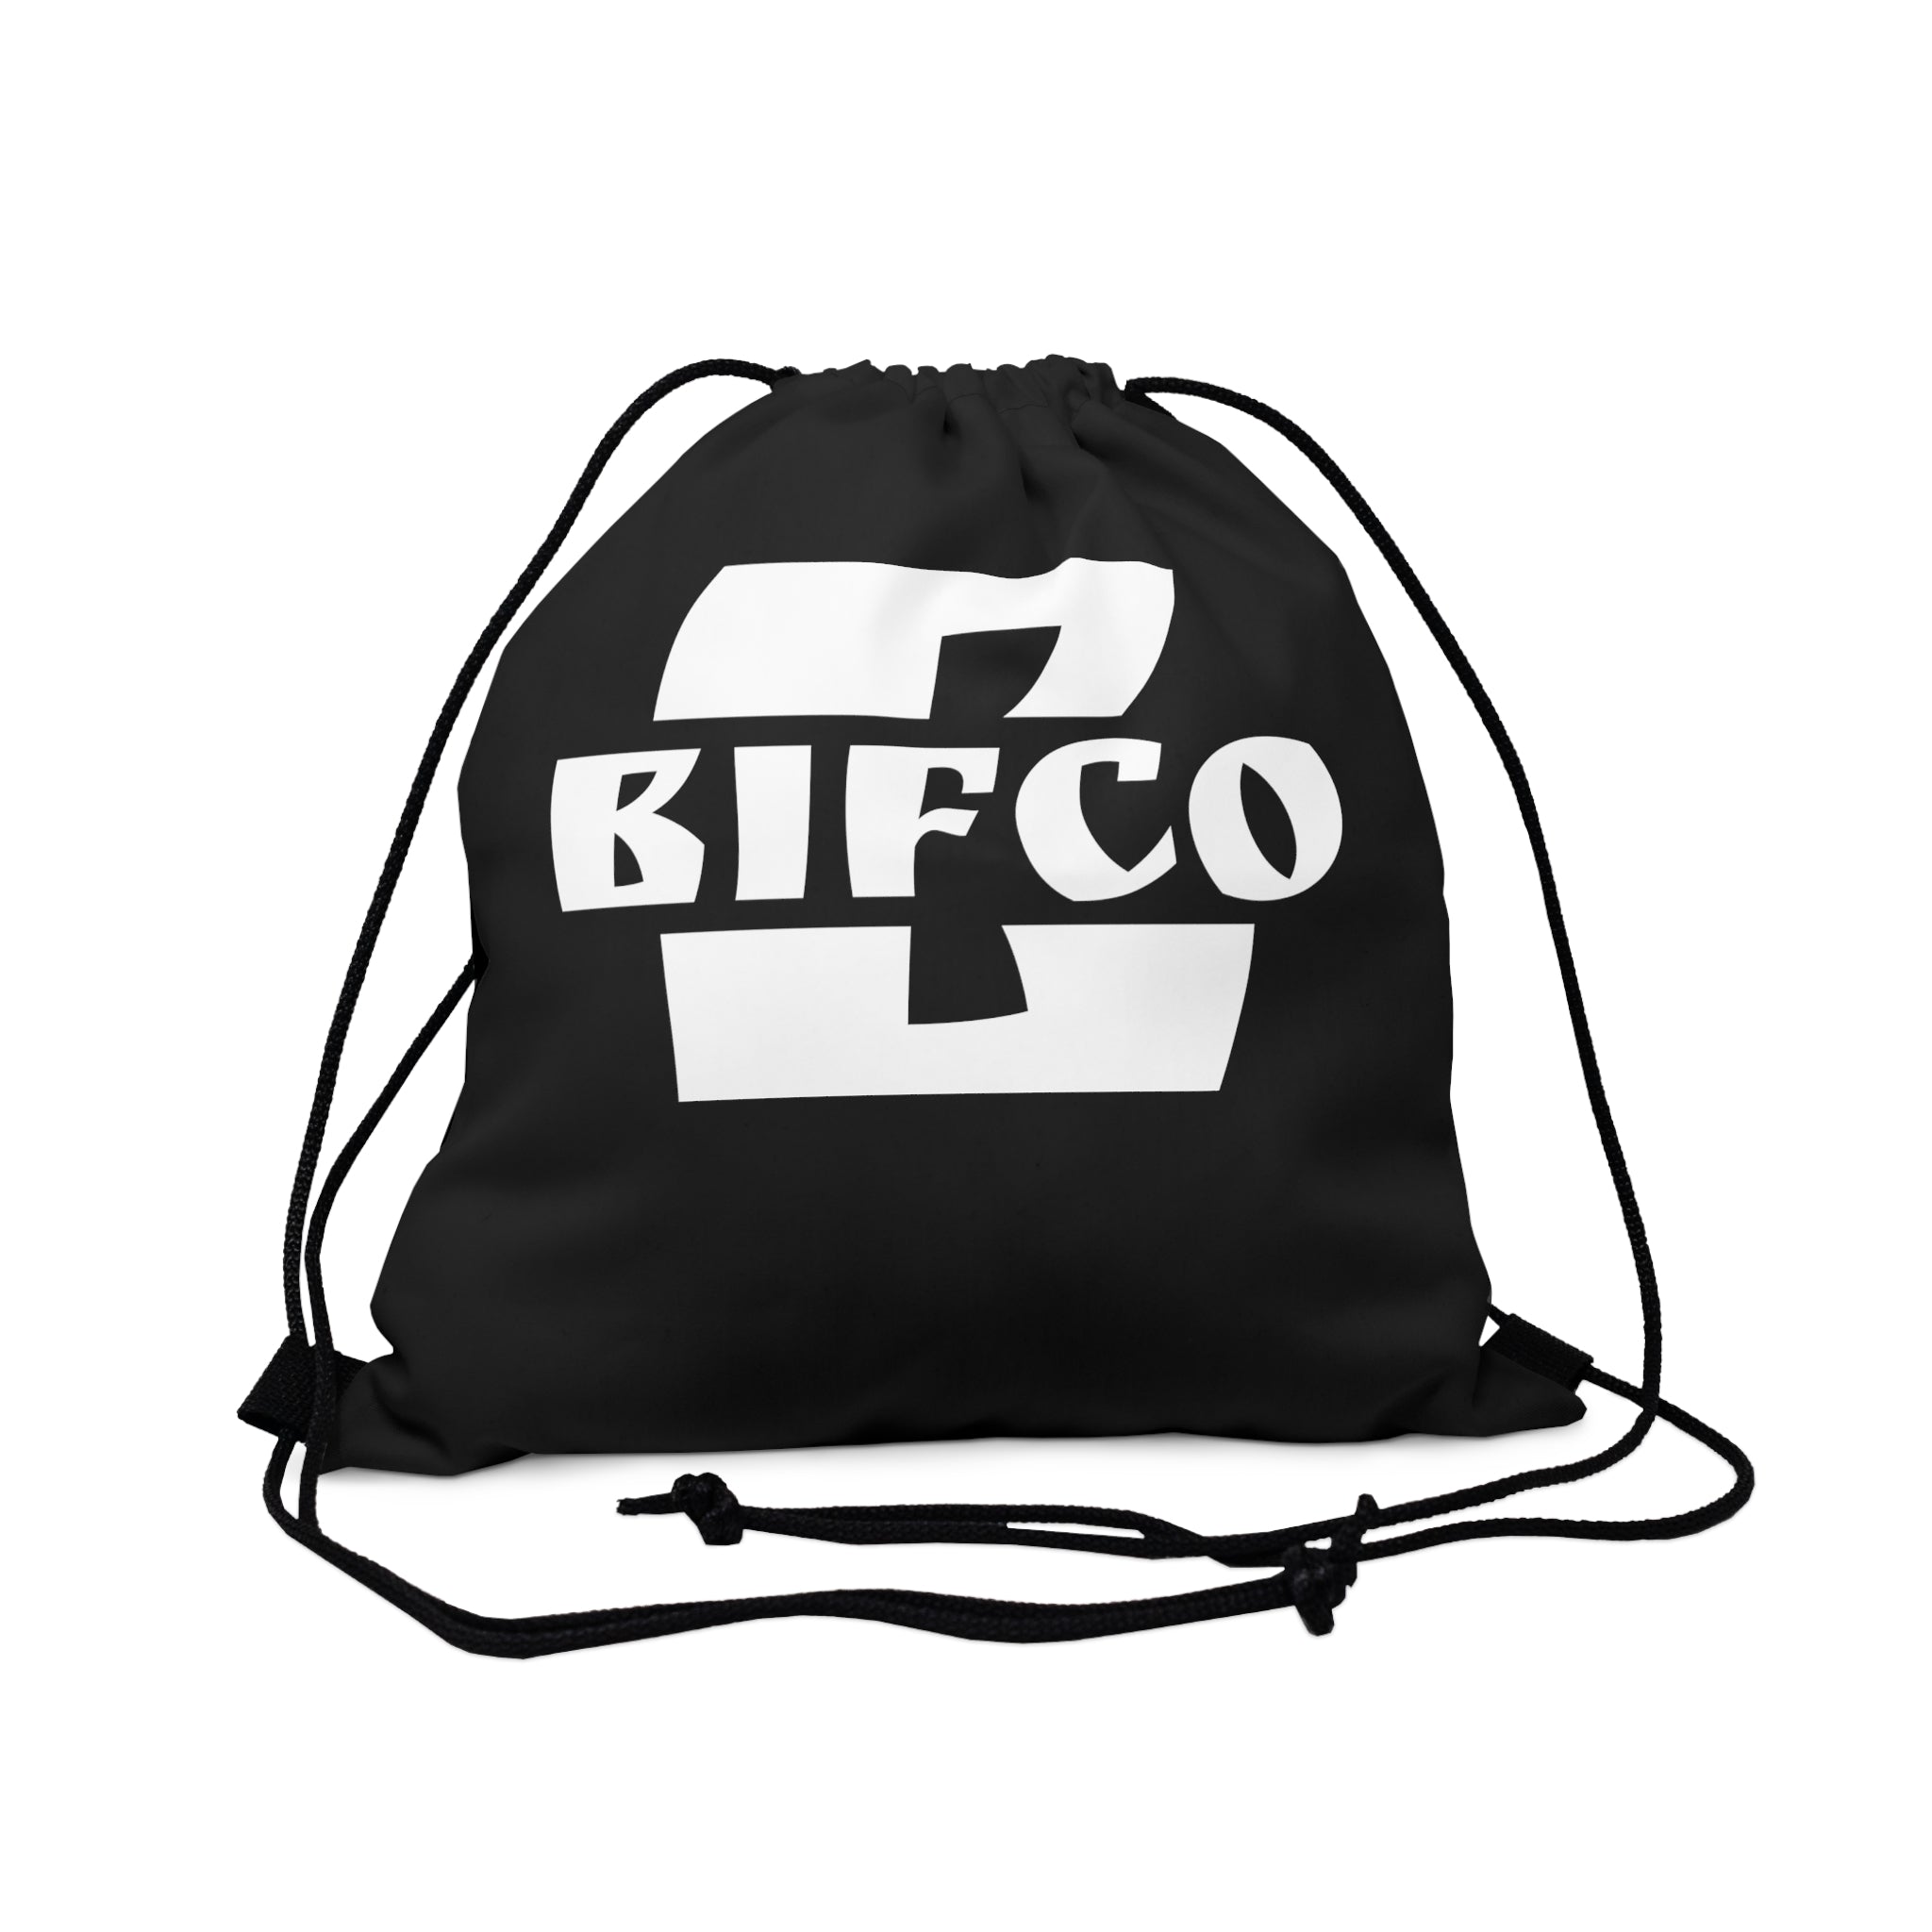 Bifco Tote Bag